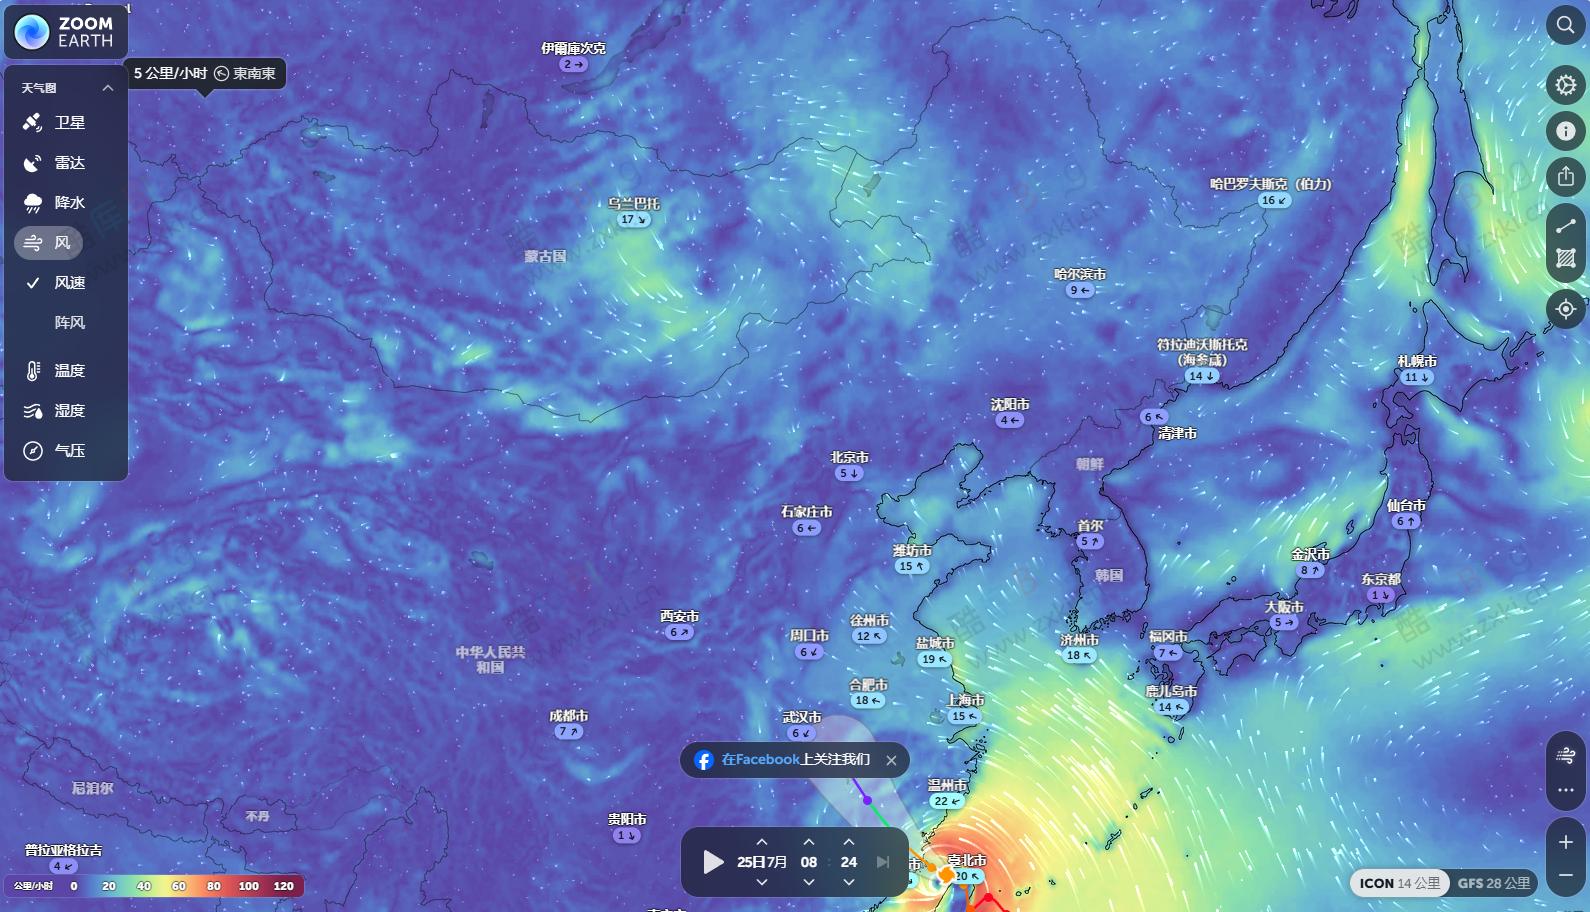 Zoom Earth – 全球实时交互式天气地图，雨雷达，预报工具